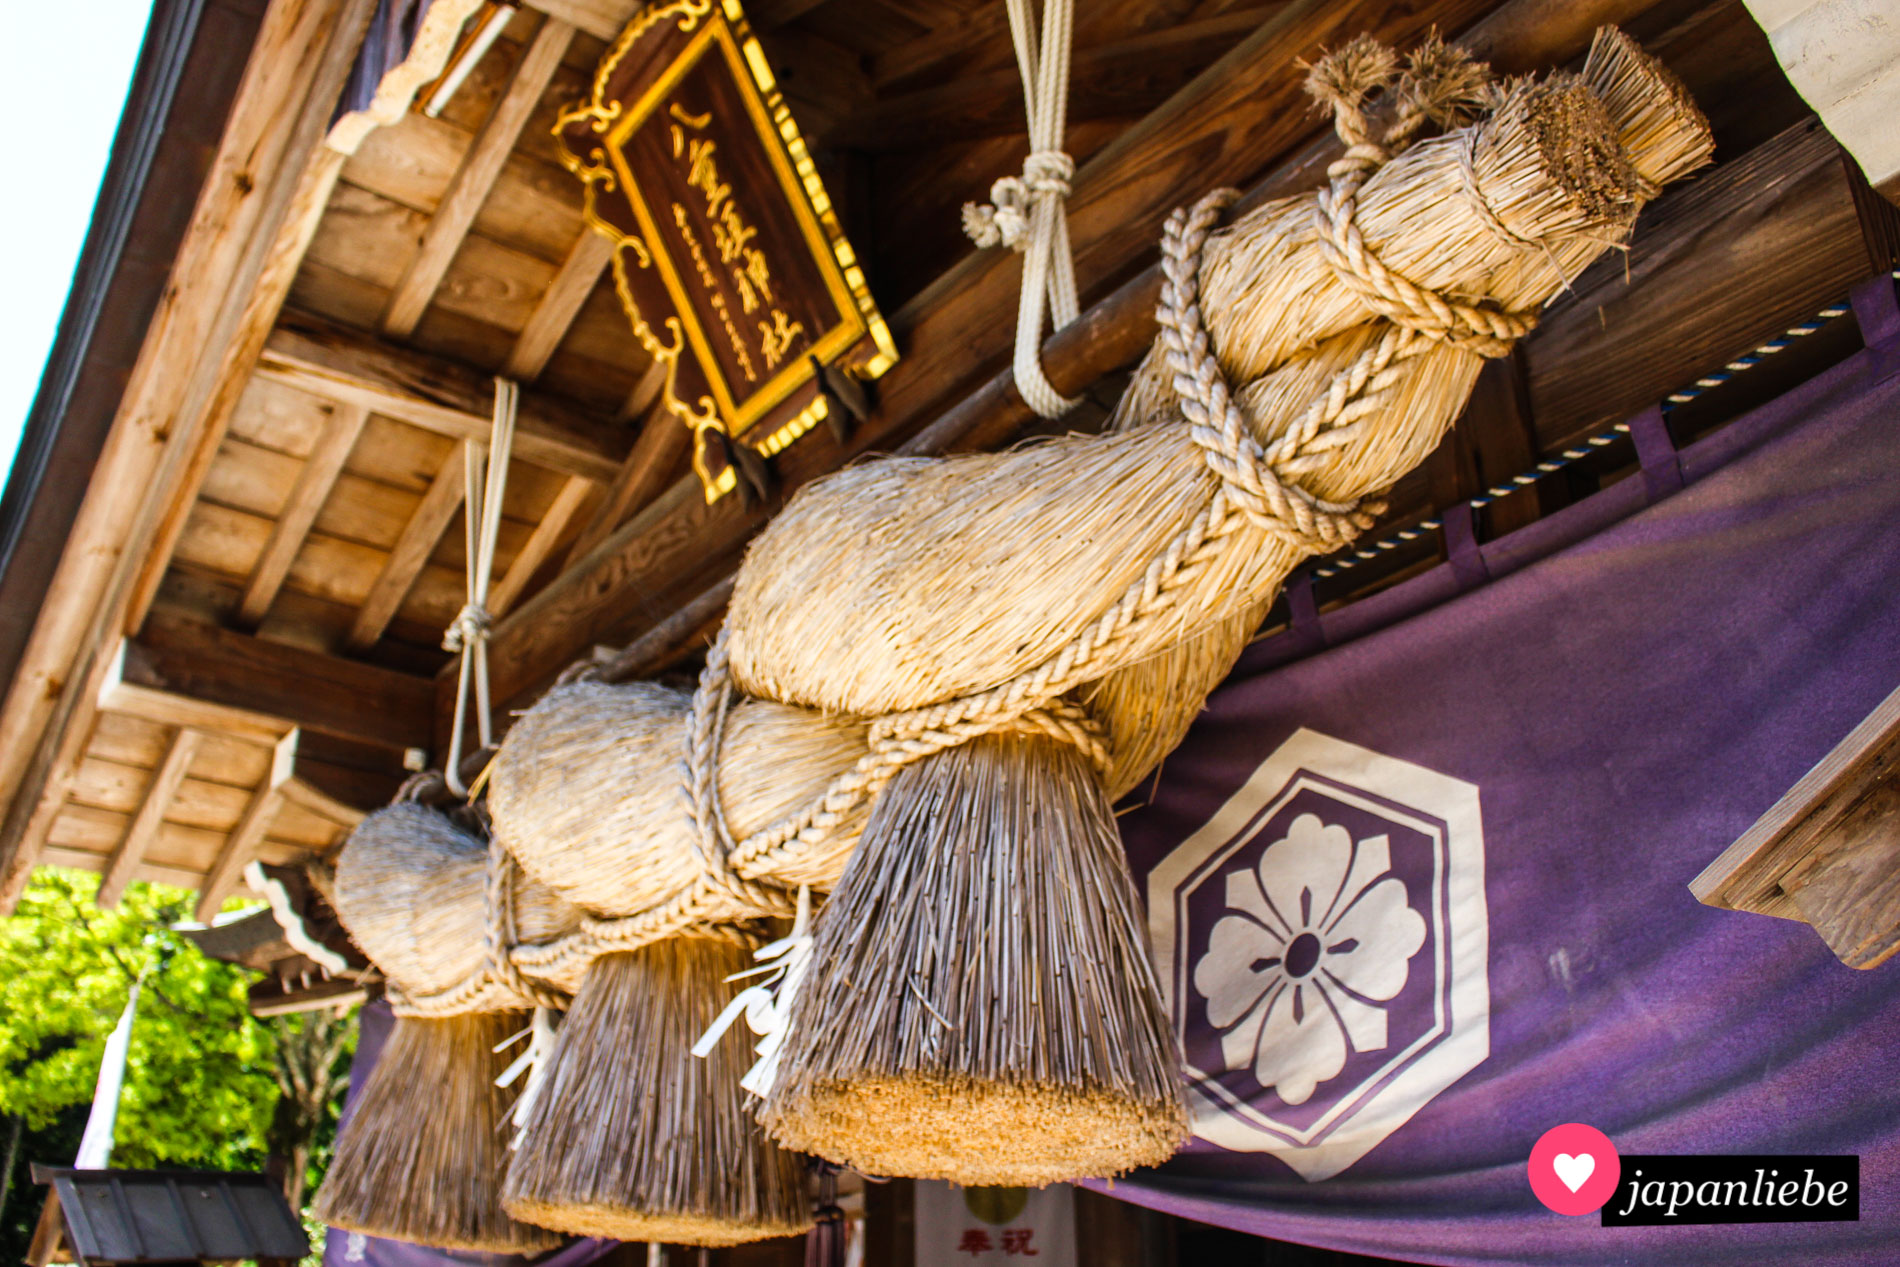 Am Yaegki-Schrein in Matsue fand angeblich Japans erste Hochzeit statt. Die Haupthalle ziert ein großes shimenawa-Reisstrohseil.